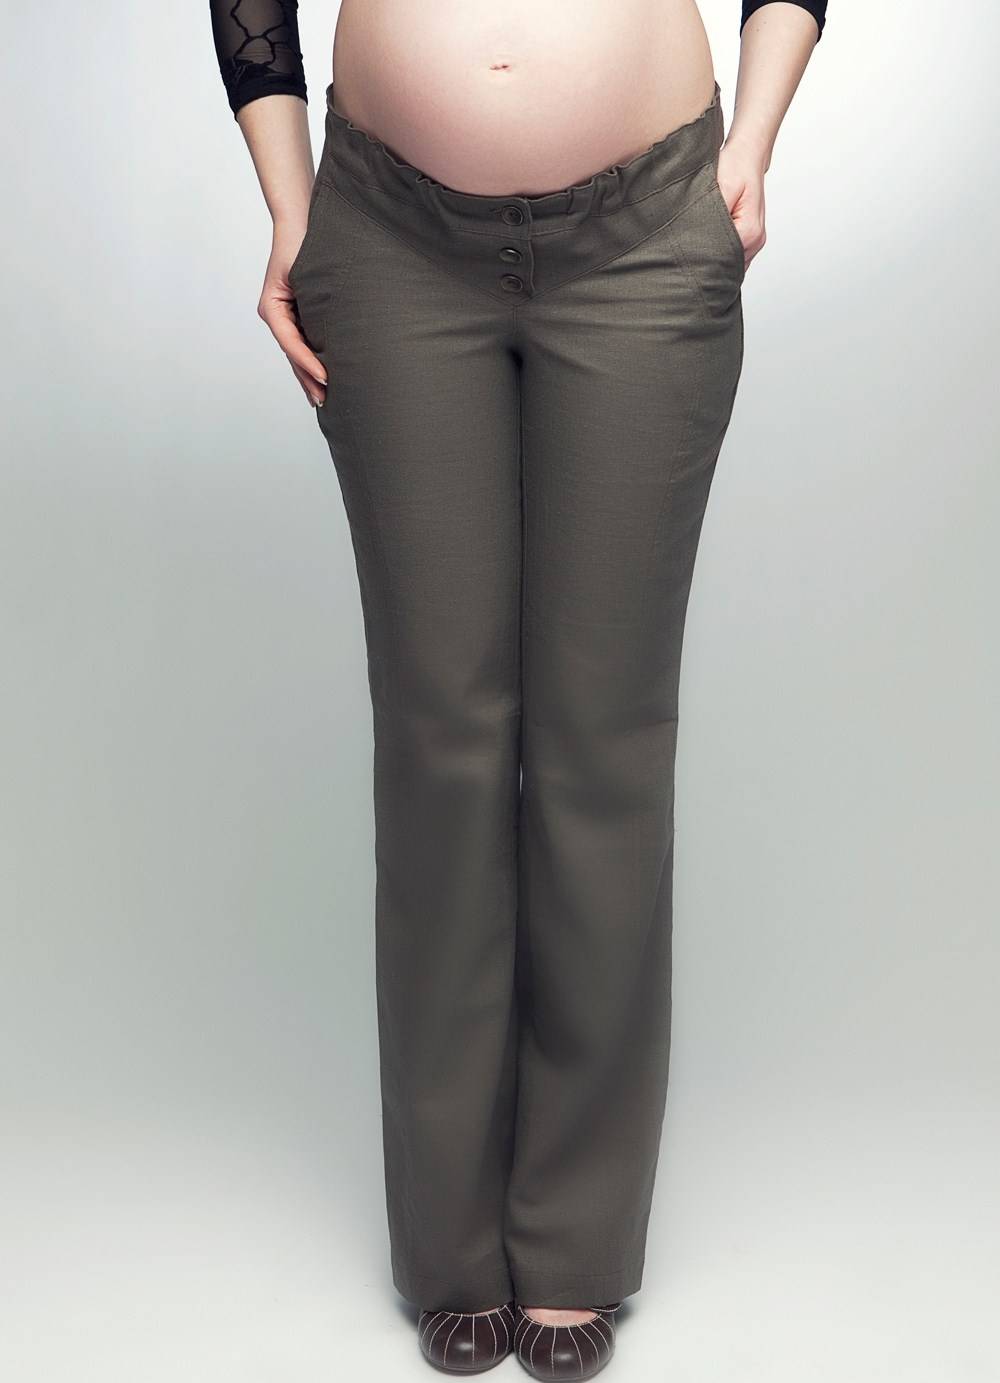 Модные штаны для беременных, анализ бренда oh ma и обзор моделей